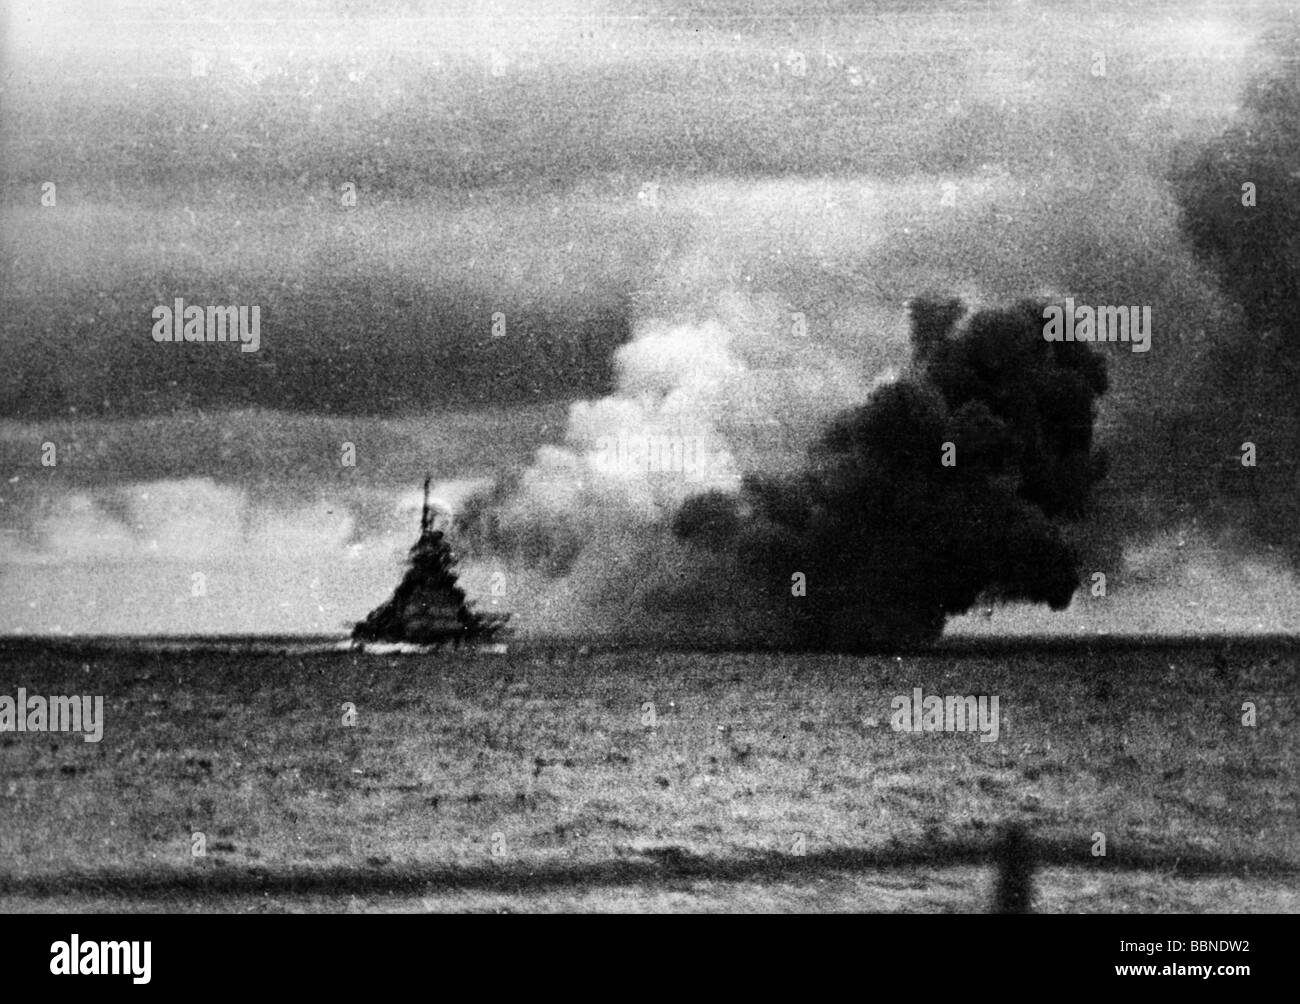 Eventos, Segunda Guerra Mundial / Segunda Guerra Mundial, guerra naval, Batalla del Estrecho de Dinamarca, acorazado alemán 'Bismarck' disparando contra el acorazado británico 'HMS Hood', 24.5.1941, Foto de stock